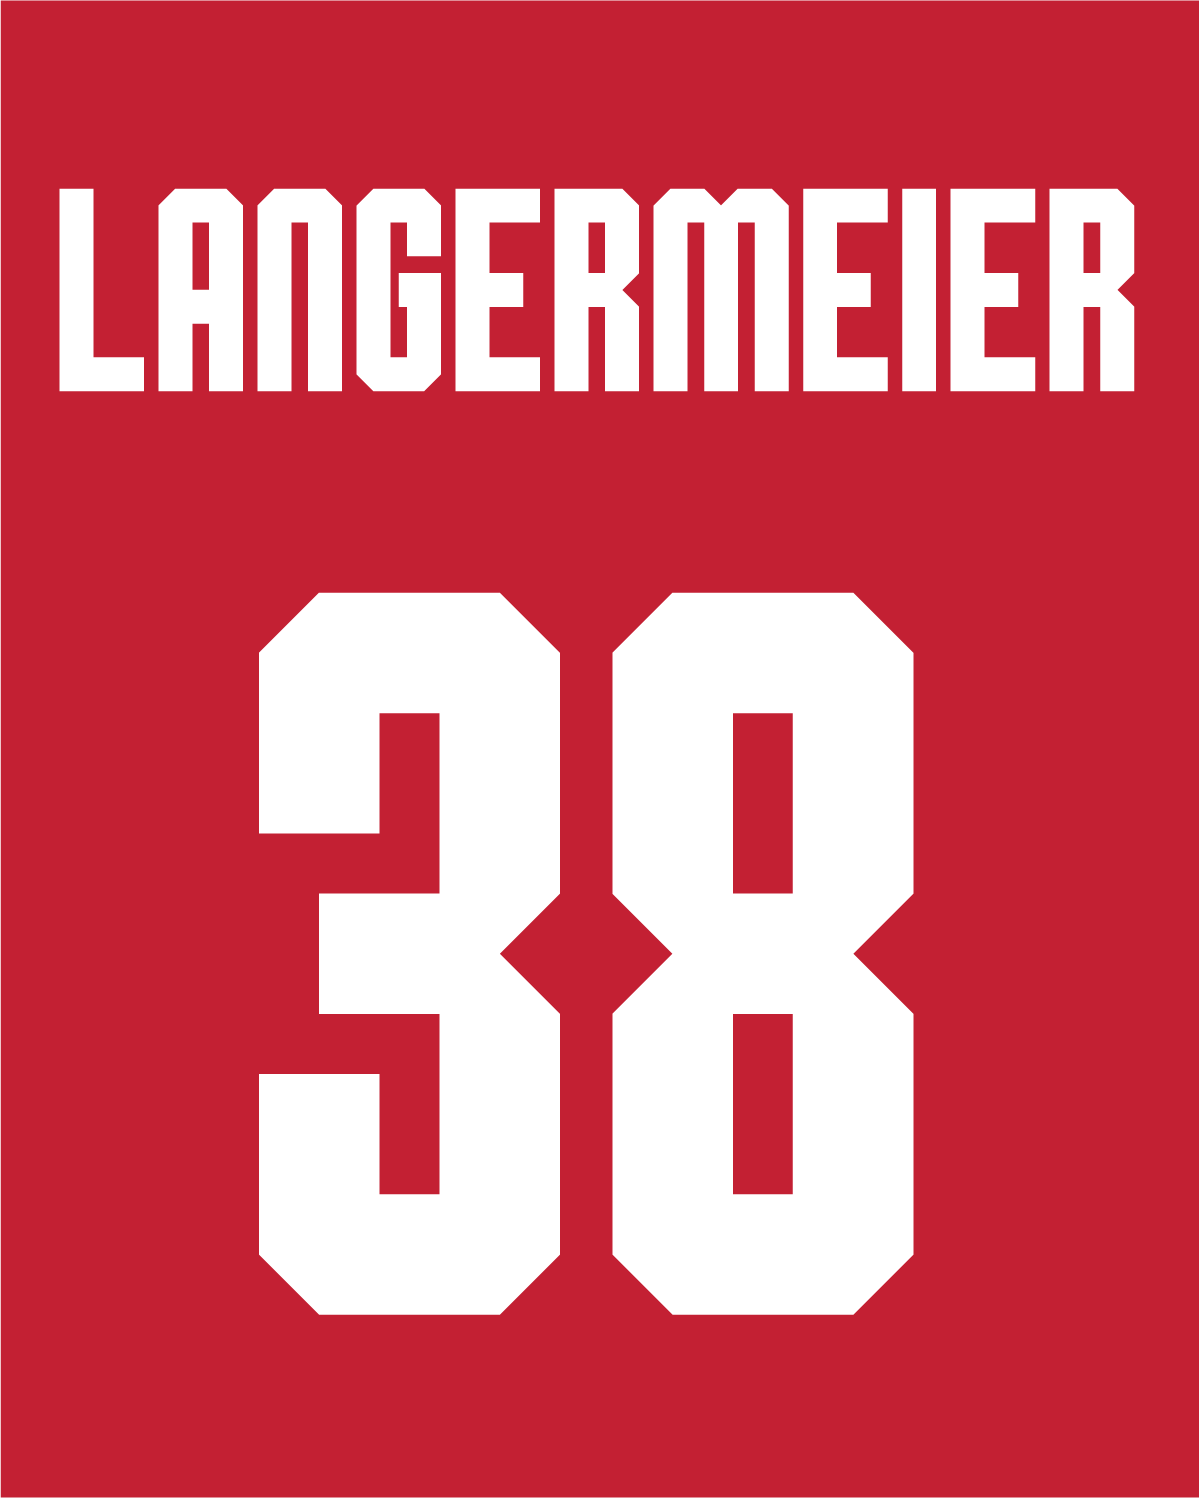 Greg Langermeier | #38